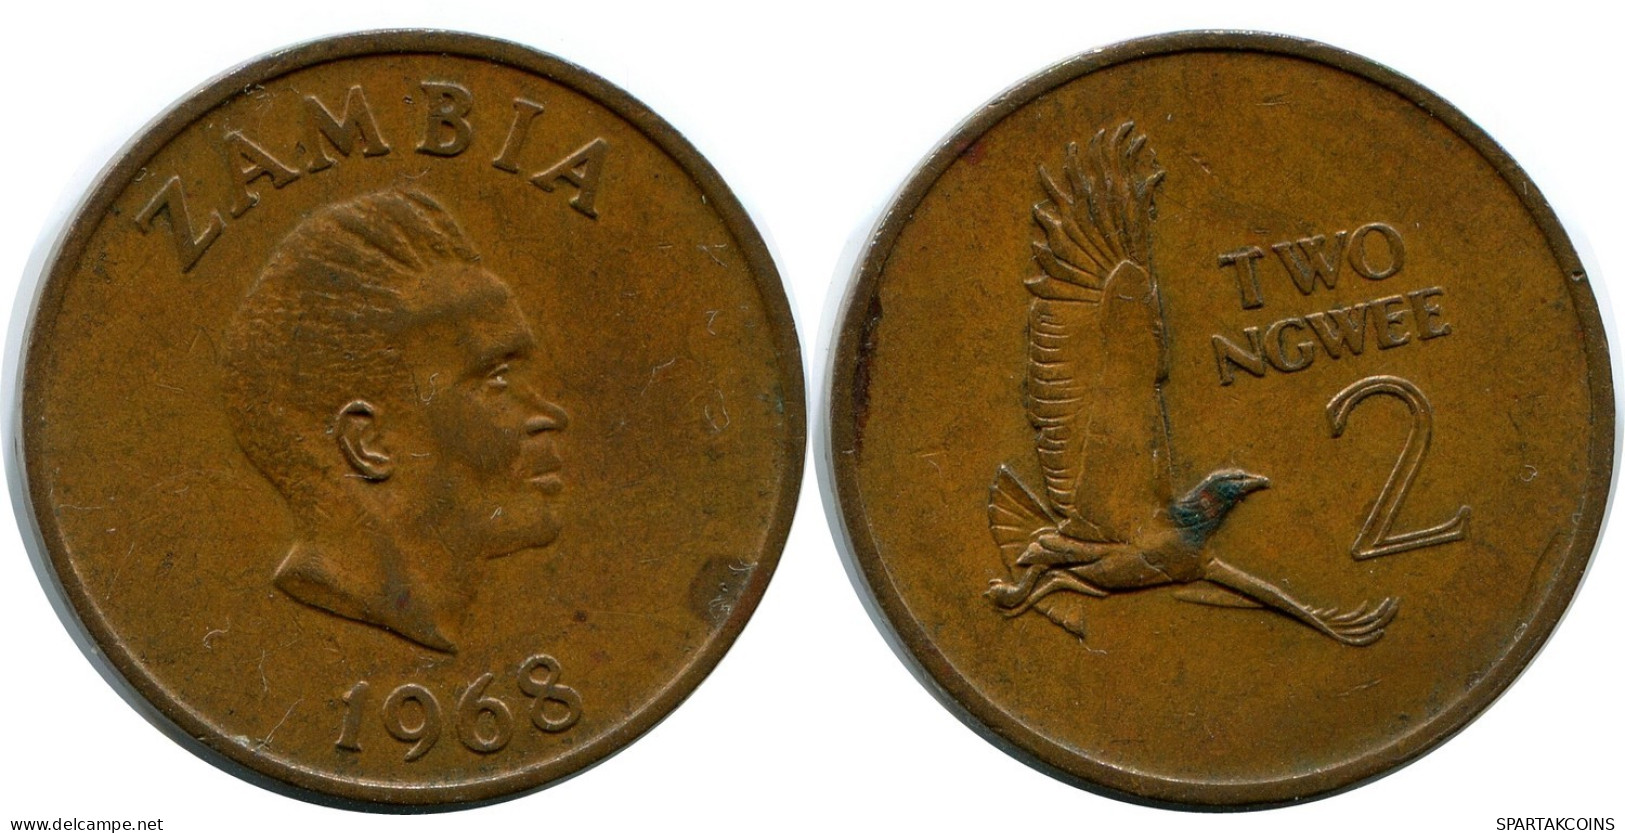 2 NGWEE 1968 ZAMBIA Coin #AP966.U.A - Sambia